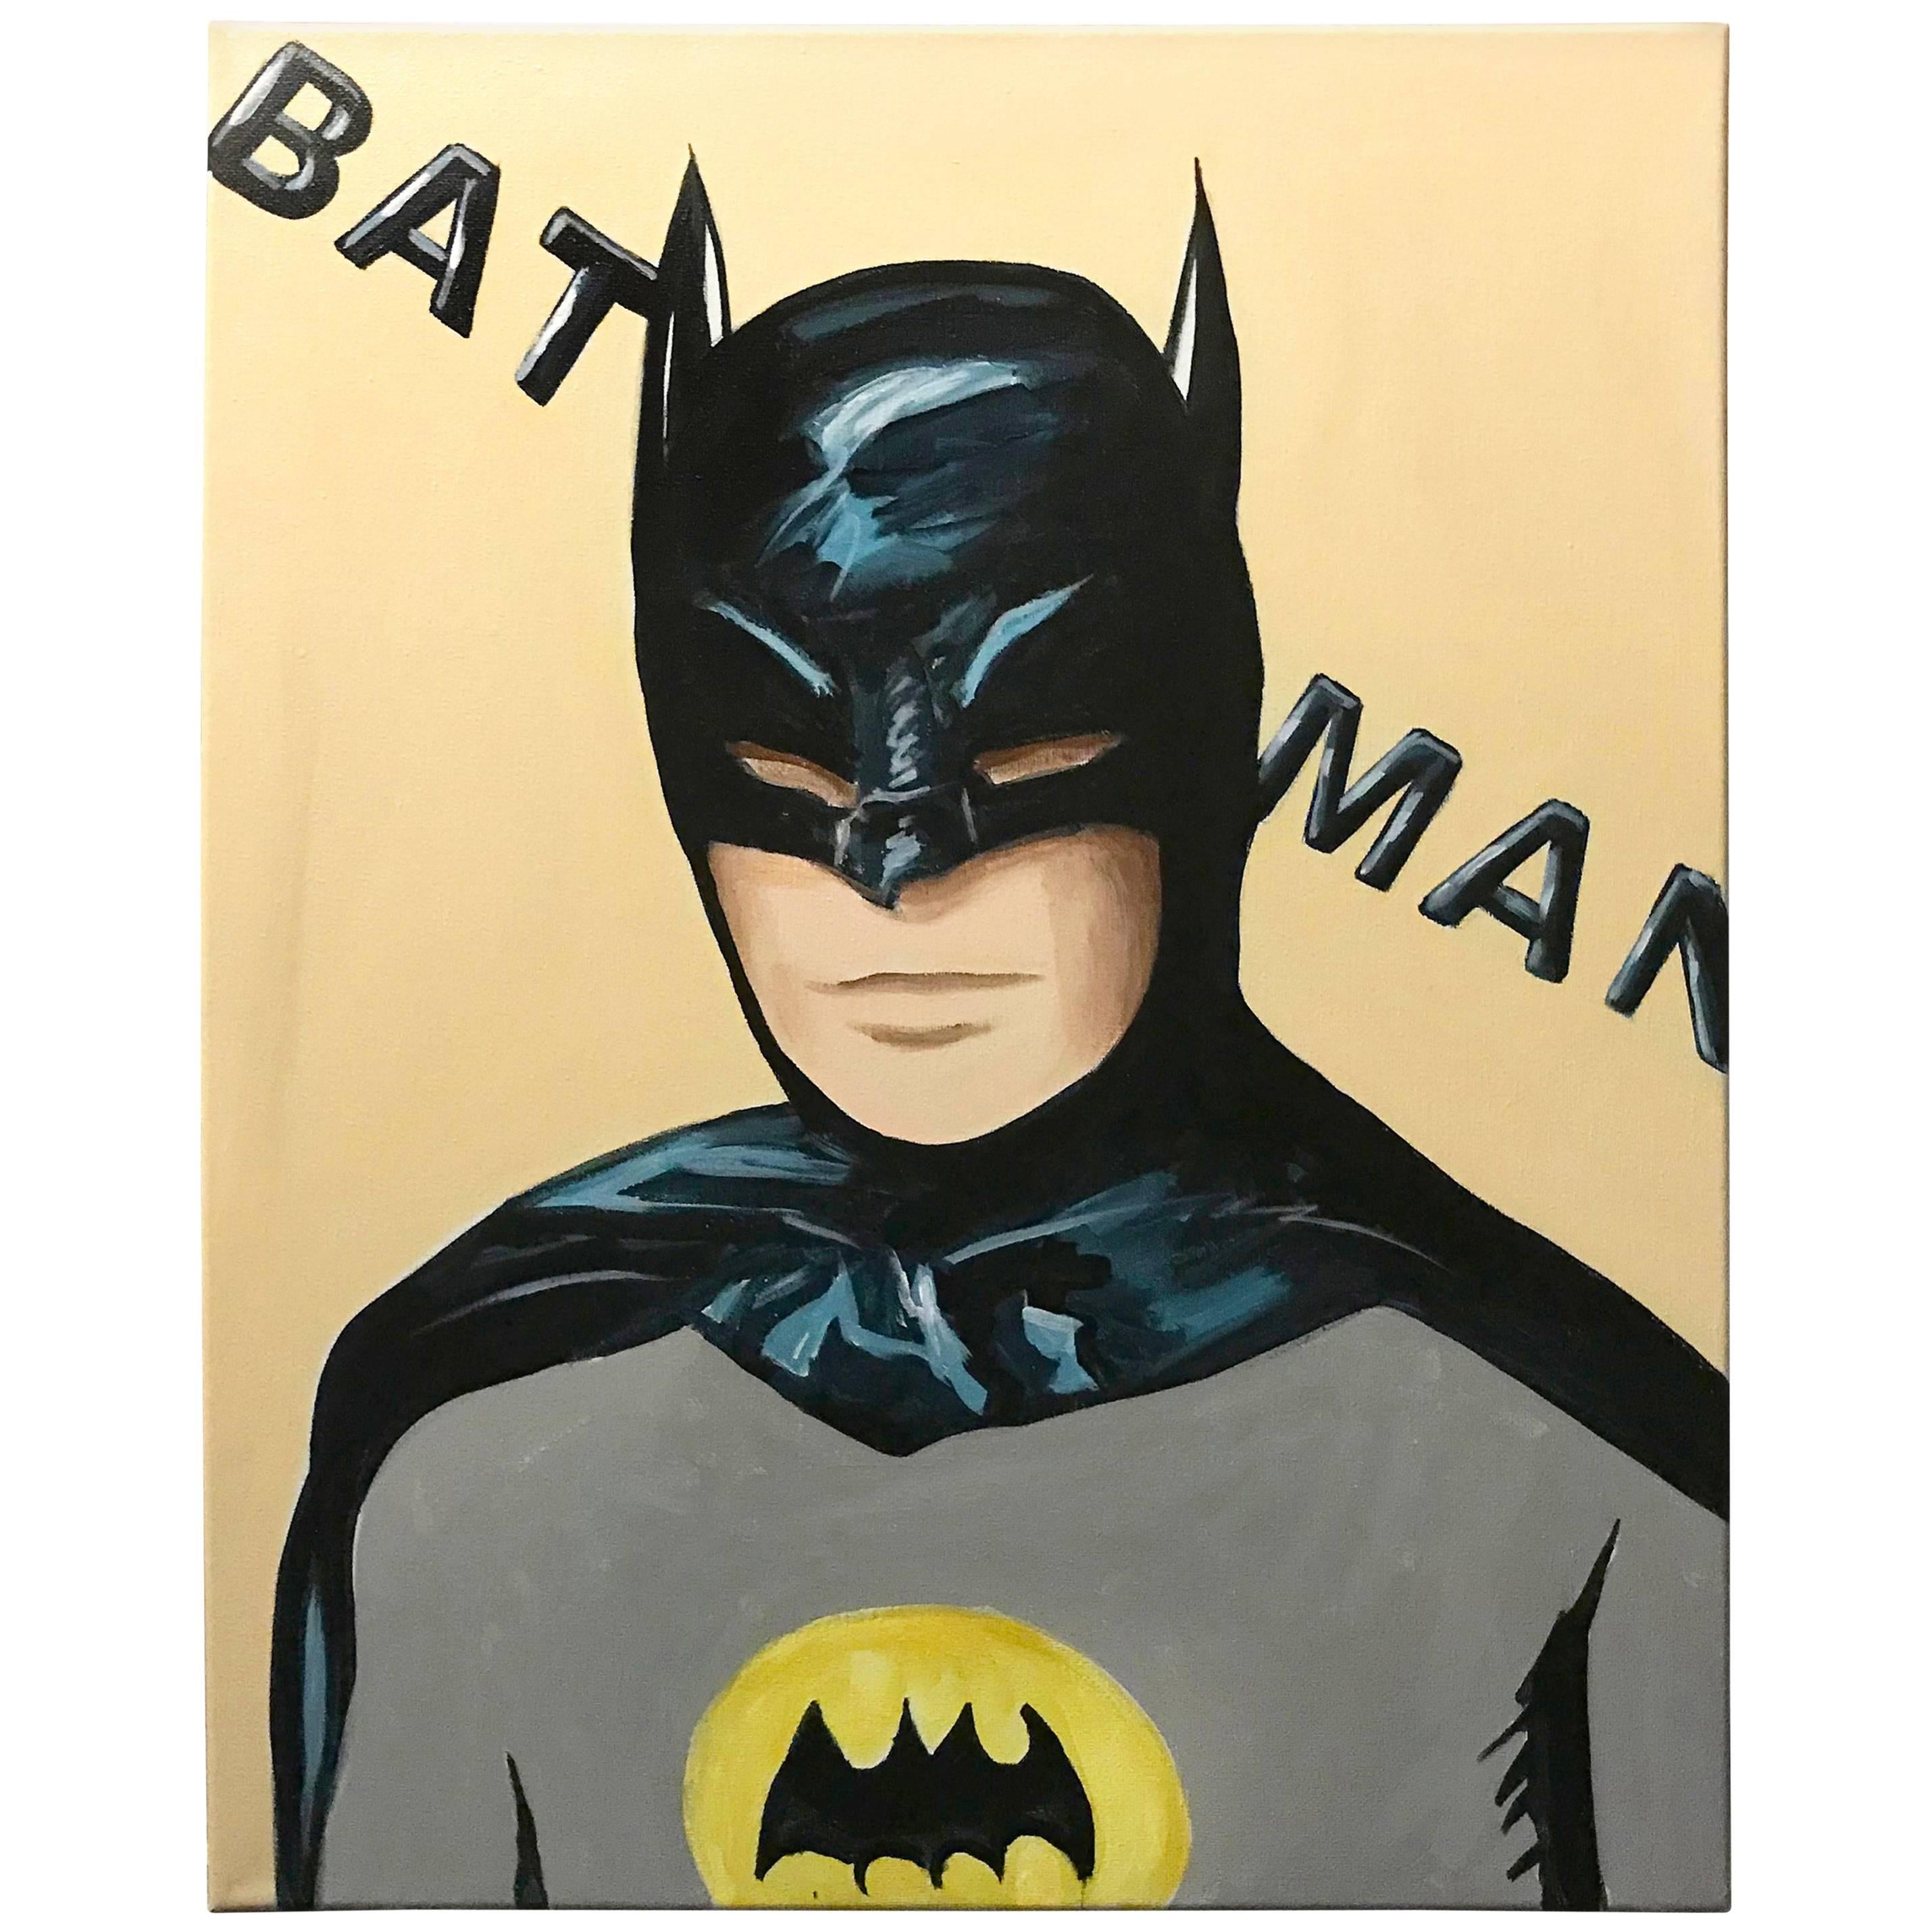 Portrait of a Batman Pop Art Painting by Hatti Hoodsveld